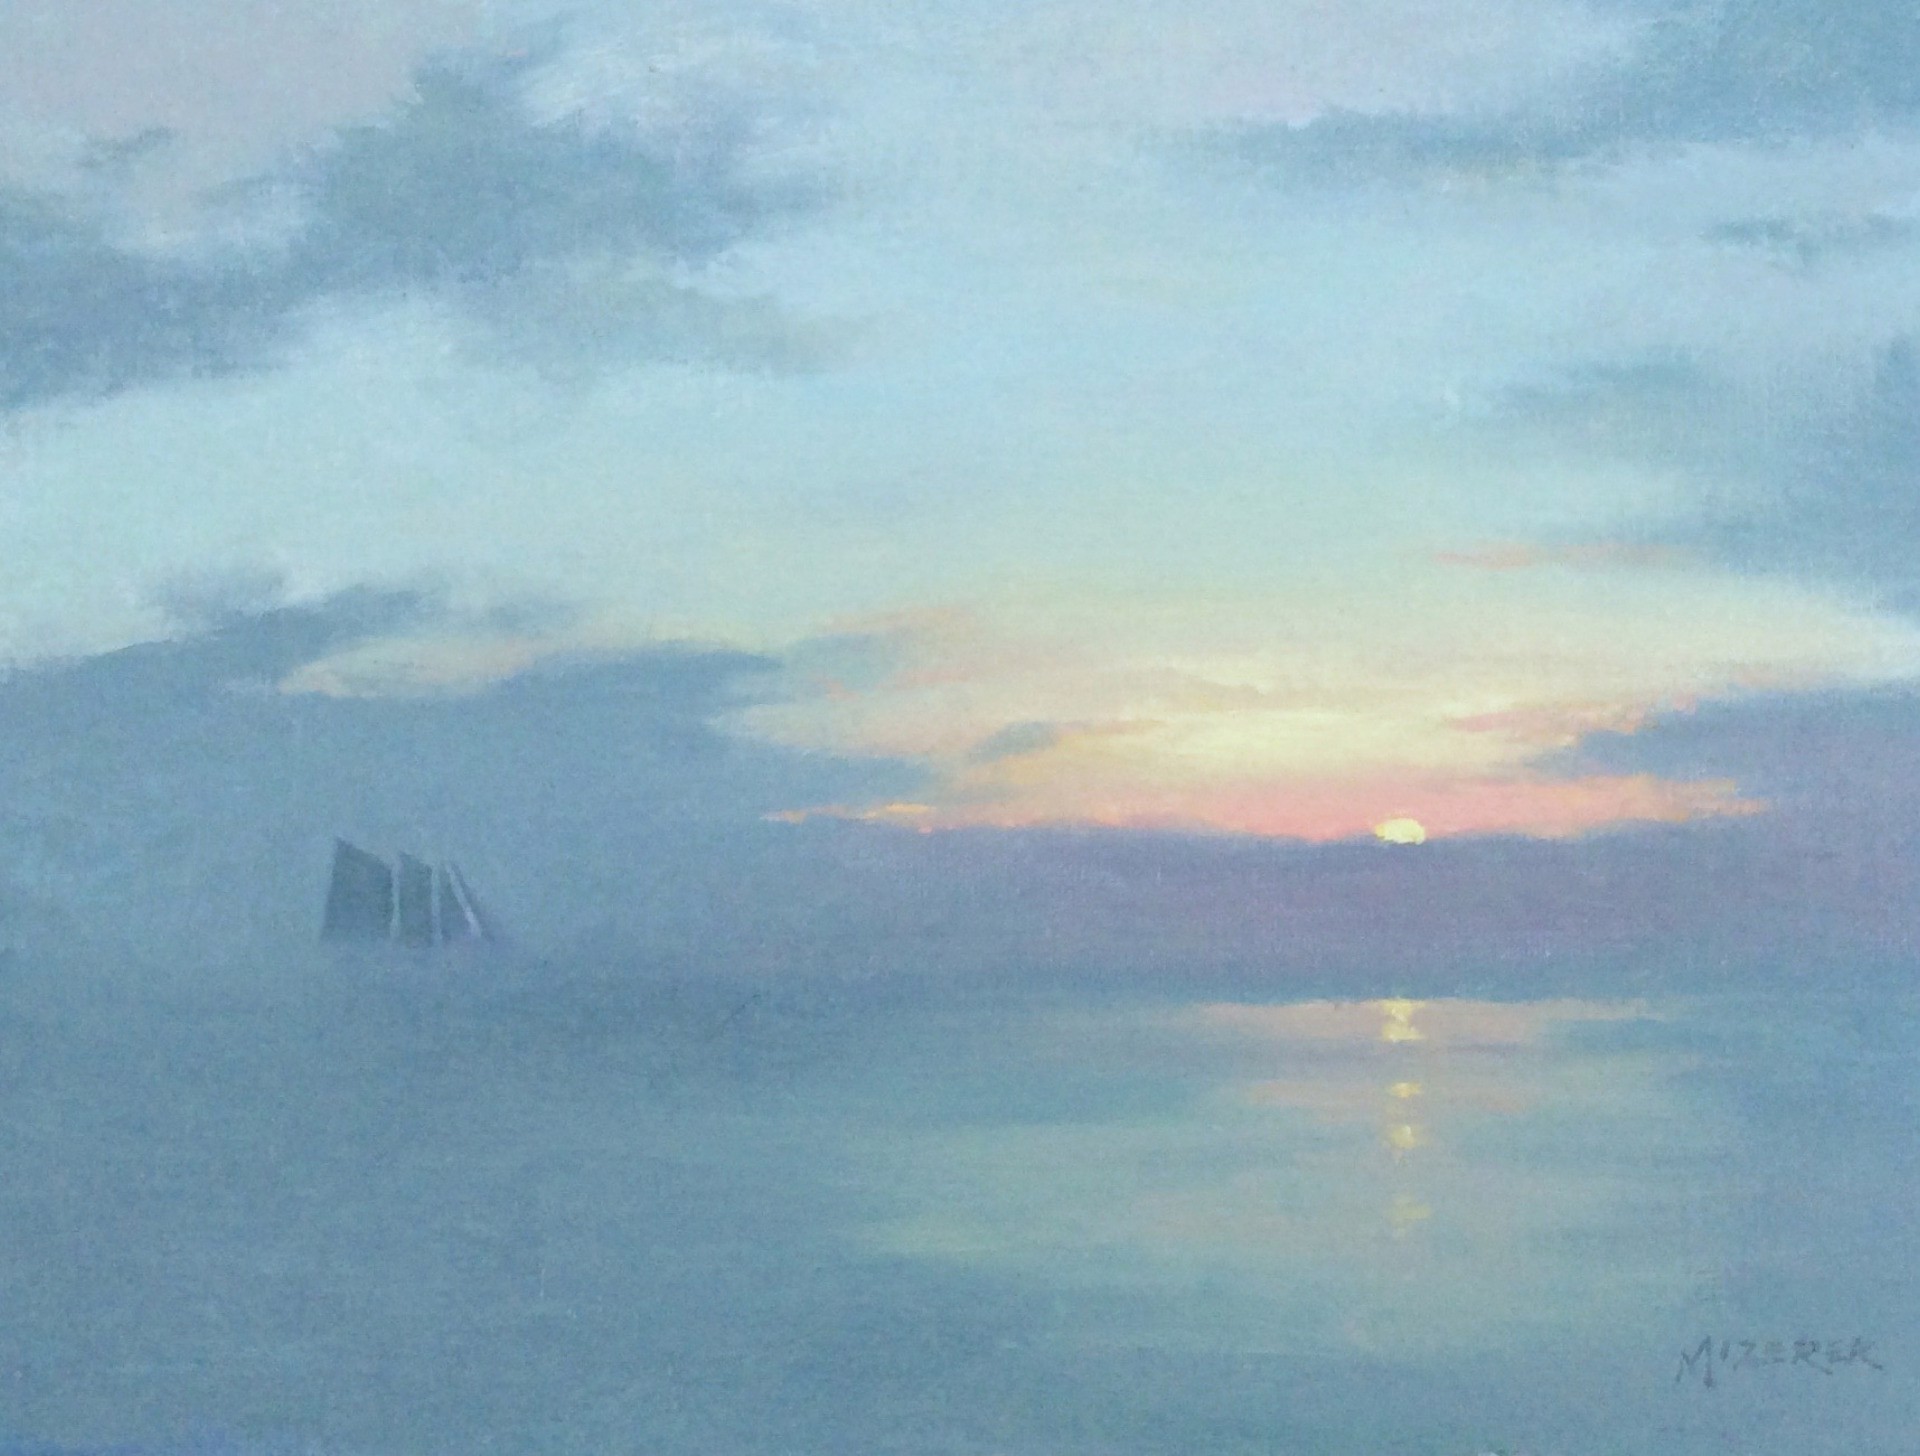 Sailing Through the Mist by Leonard Mizerek